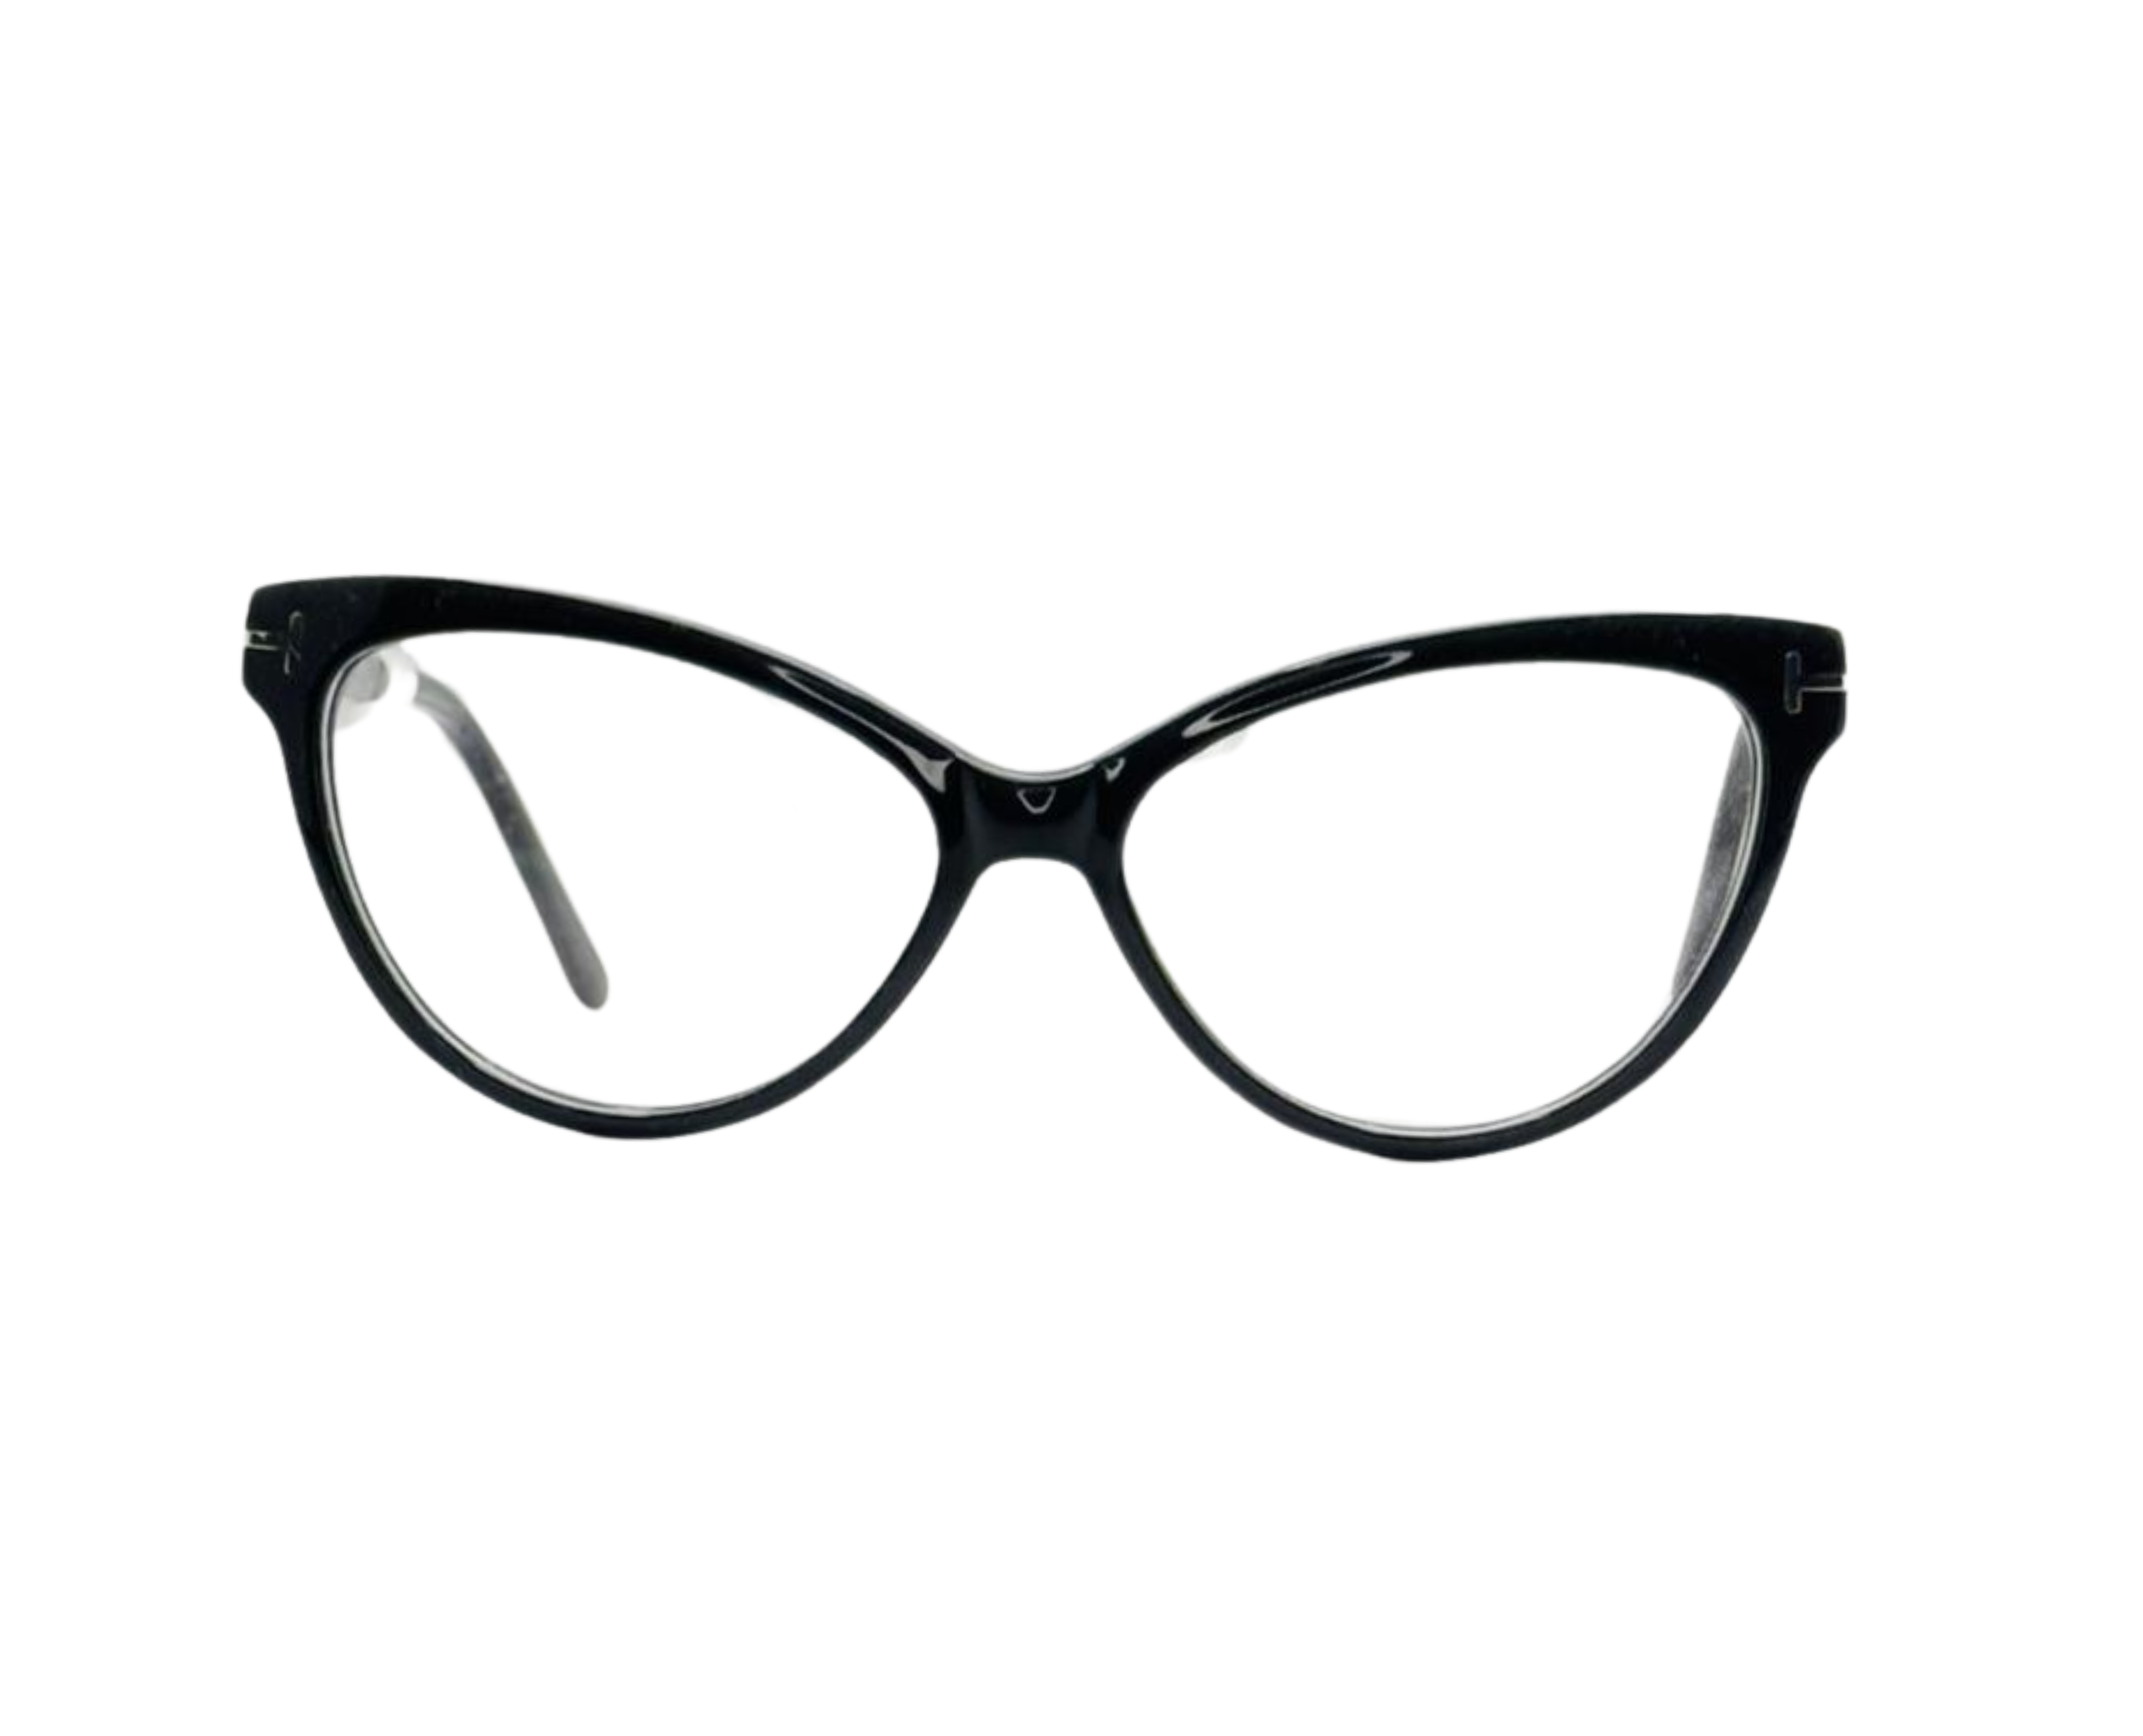 NS Luxury - J10 - Black - Eyeglasses